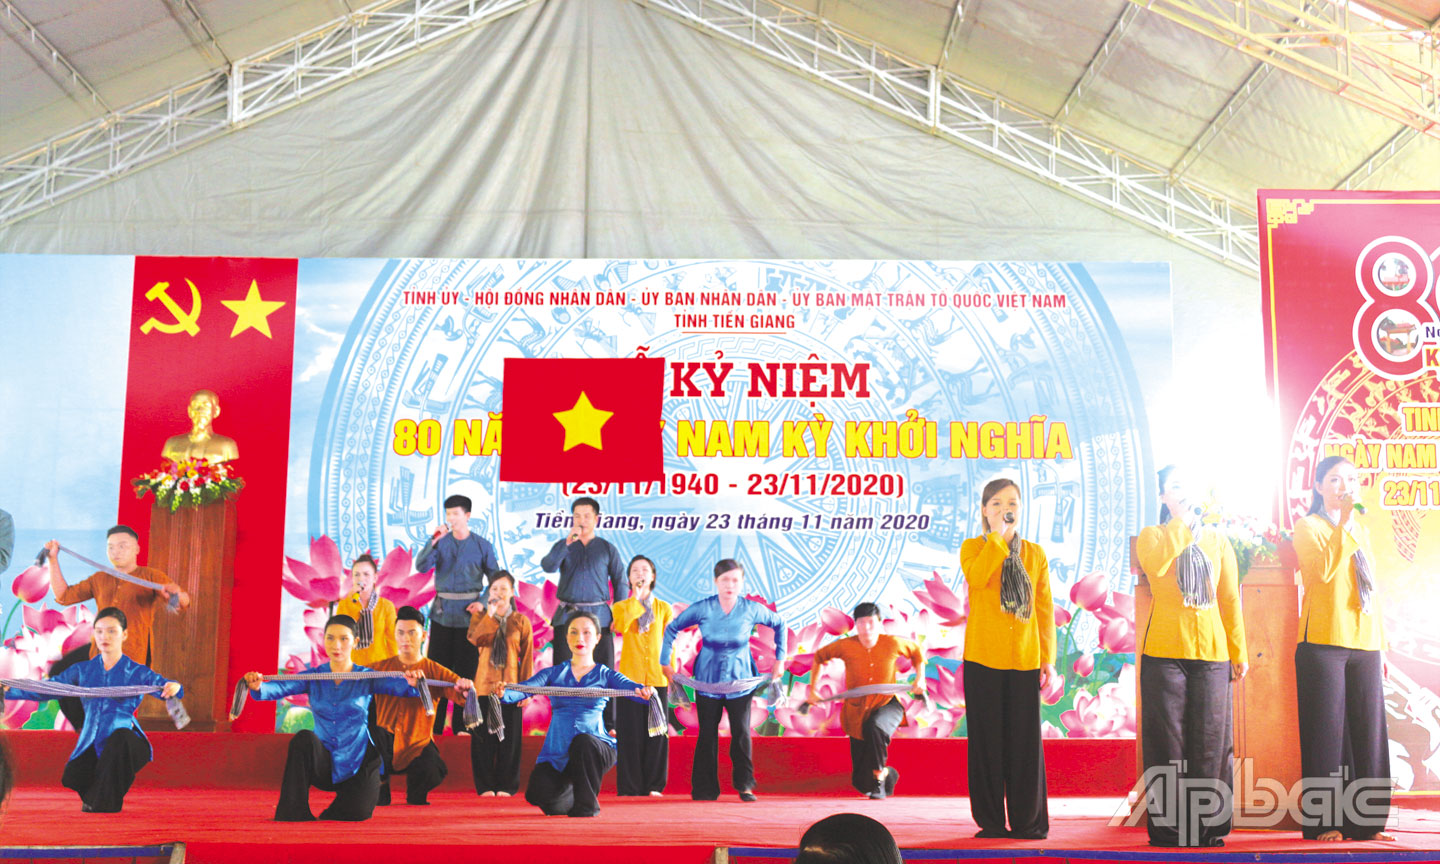 Thời gian qua, ngành Văn hóa, Thể thao và Du lịch tỉnh Tiền Giang đã triển khai tốt các hoạt động, đóng góp vào sự phát triển kinh tế - xã hội của tỉnh nhà.